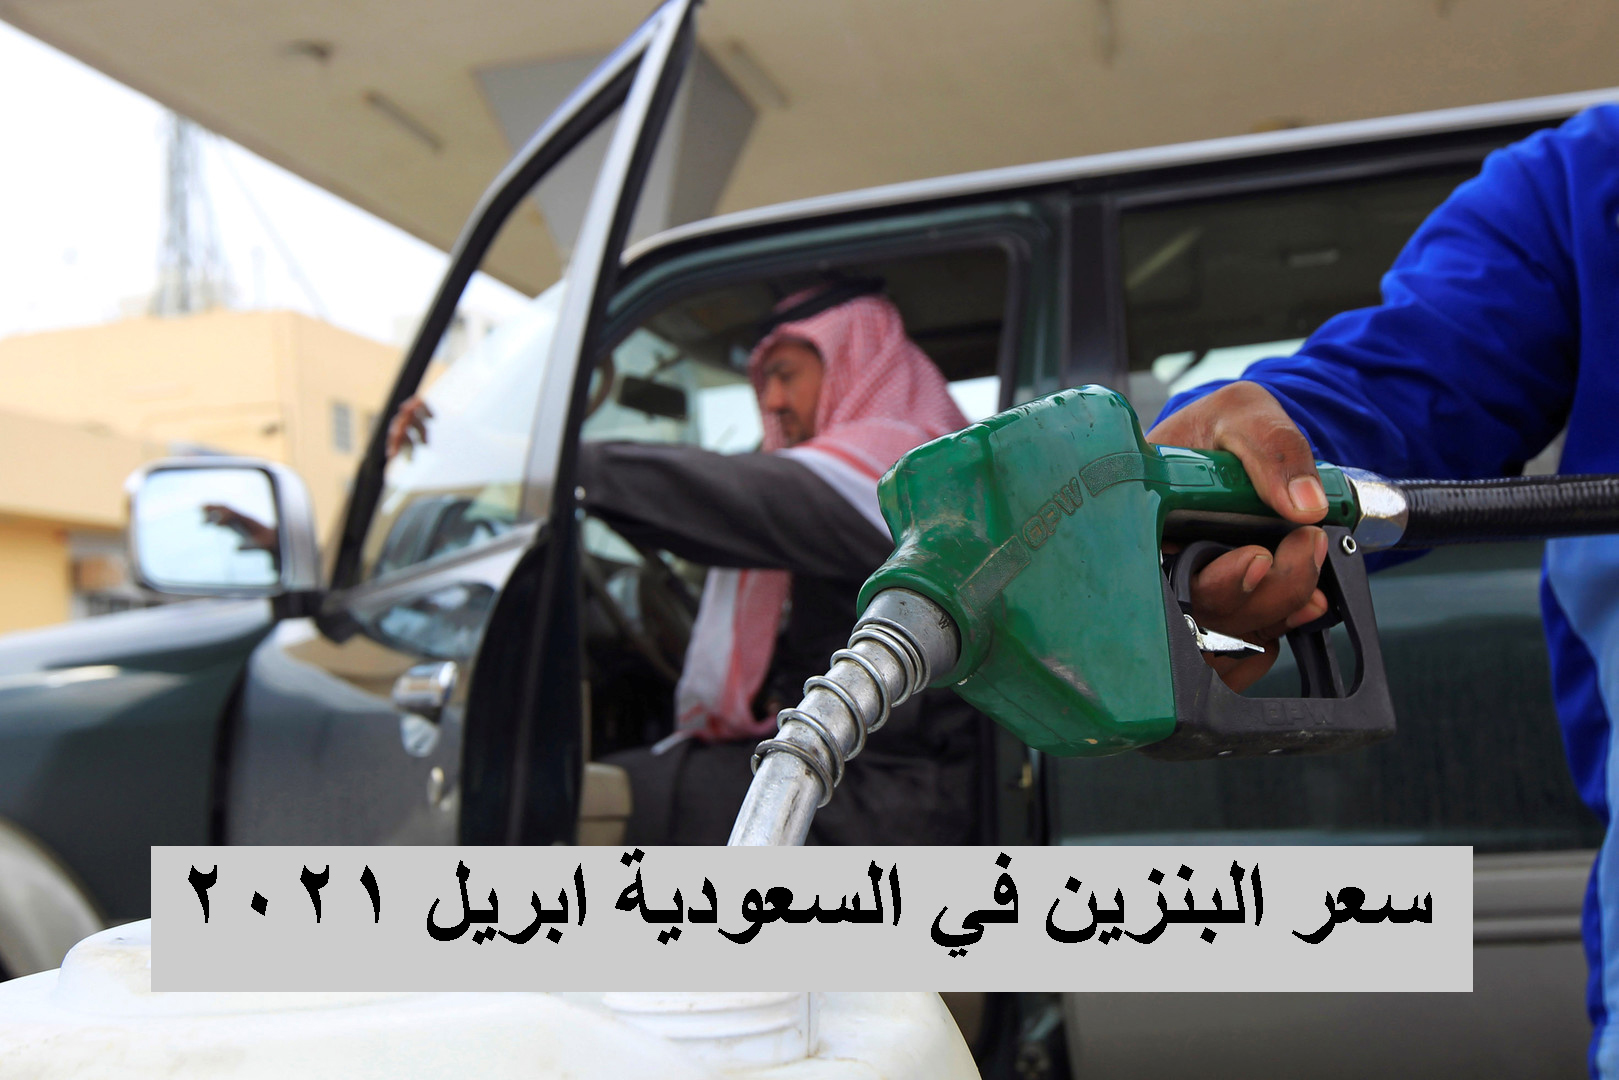 سعر البنزين في السعودية ابريل 2021 شركة اراكو aramco وموعد تطبيق الاسعار الجديدة